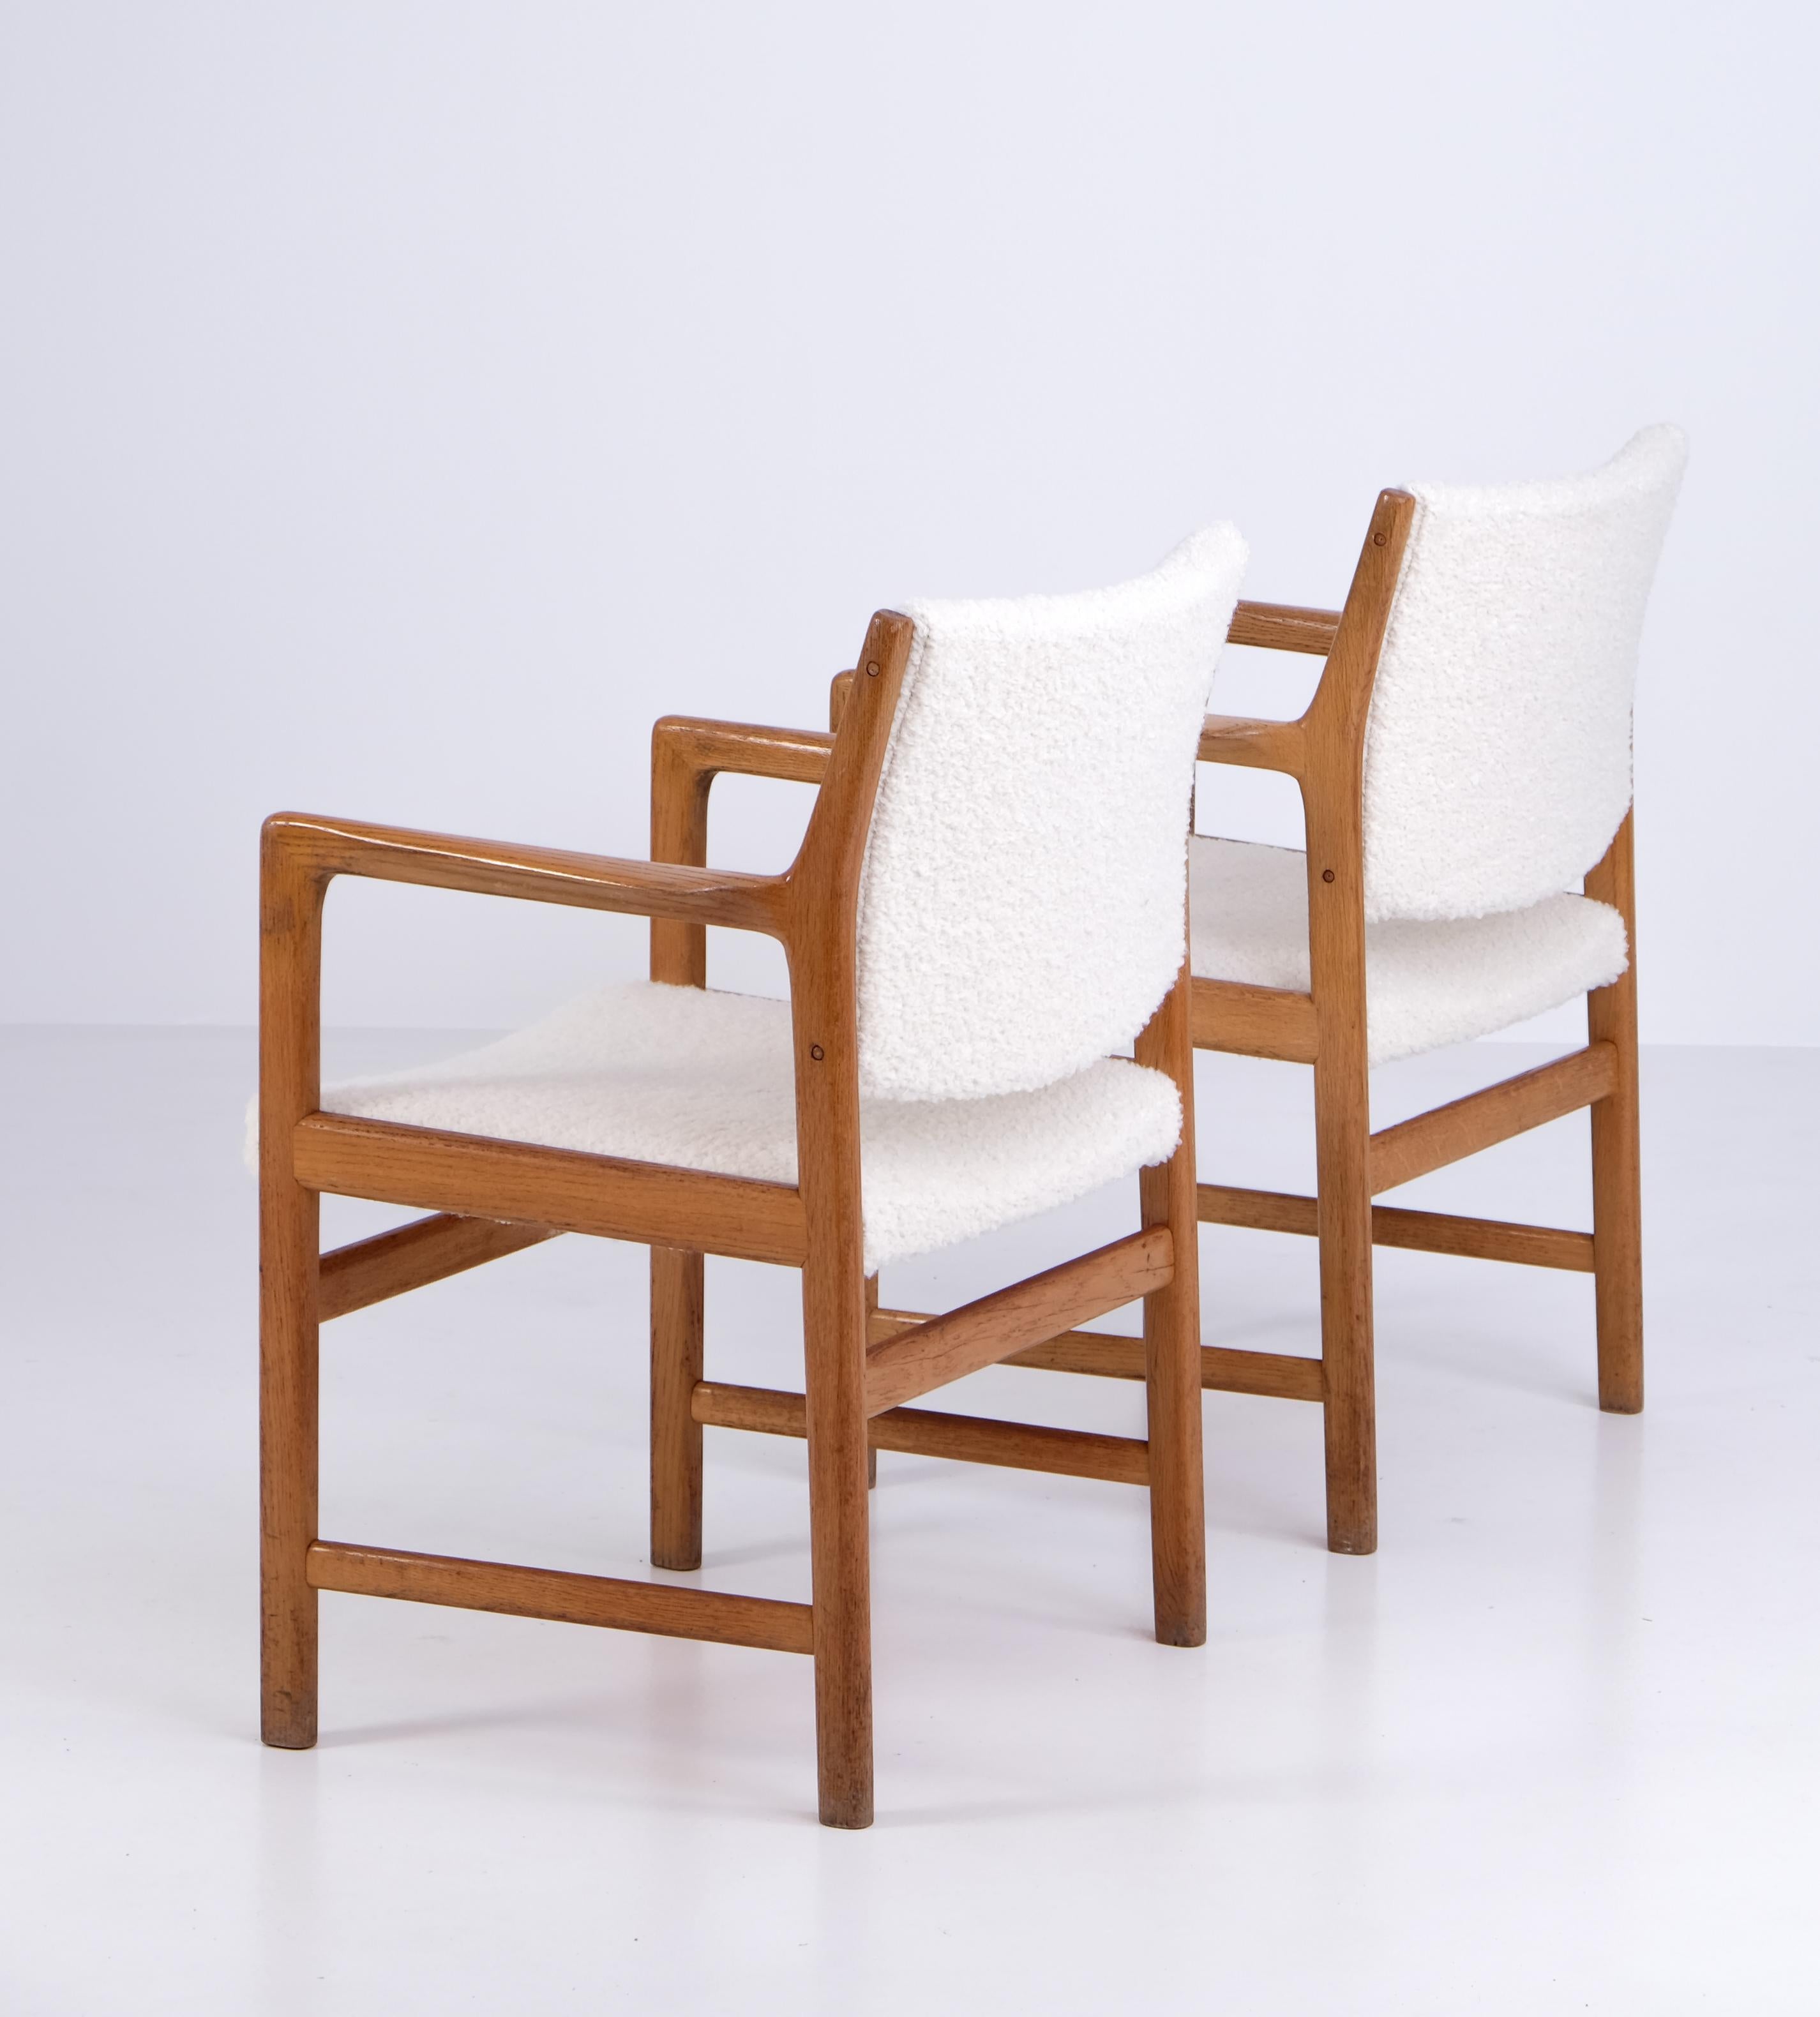 Sessel, entworfen von Karl-Erik Ekselius, hergestellt von JOC in Vetlanda, Schweden, 1960er Jahre.
Massiver Eichenrahmen und neu gepolsterte Kissen.
Satz von 10 Stühlen verfügbar. Der angegebene Preis gilt für ein Paar.
 